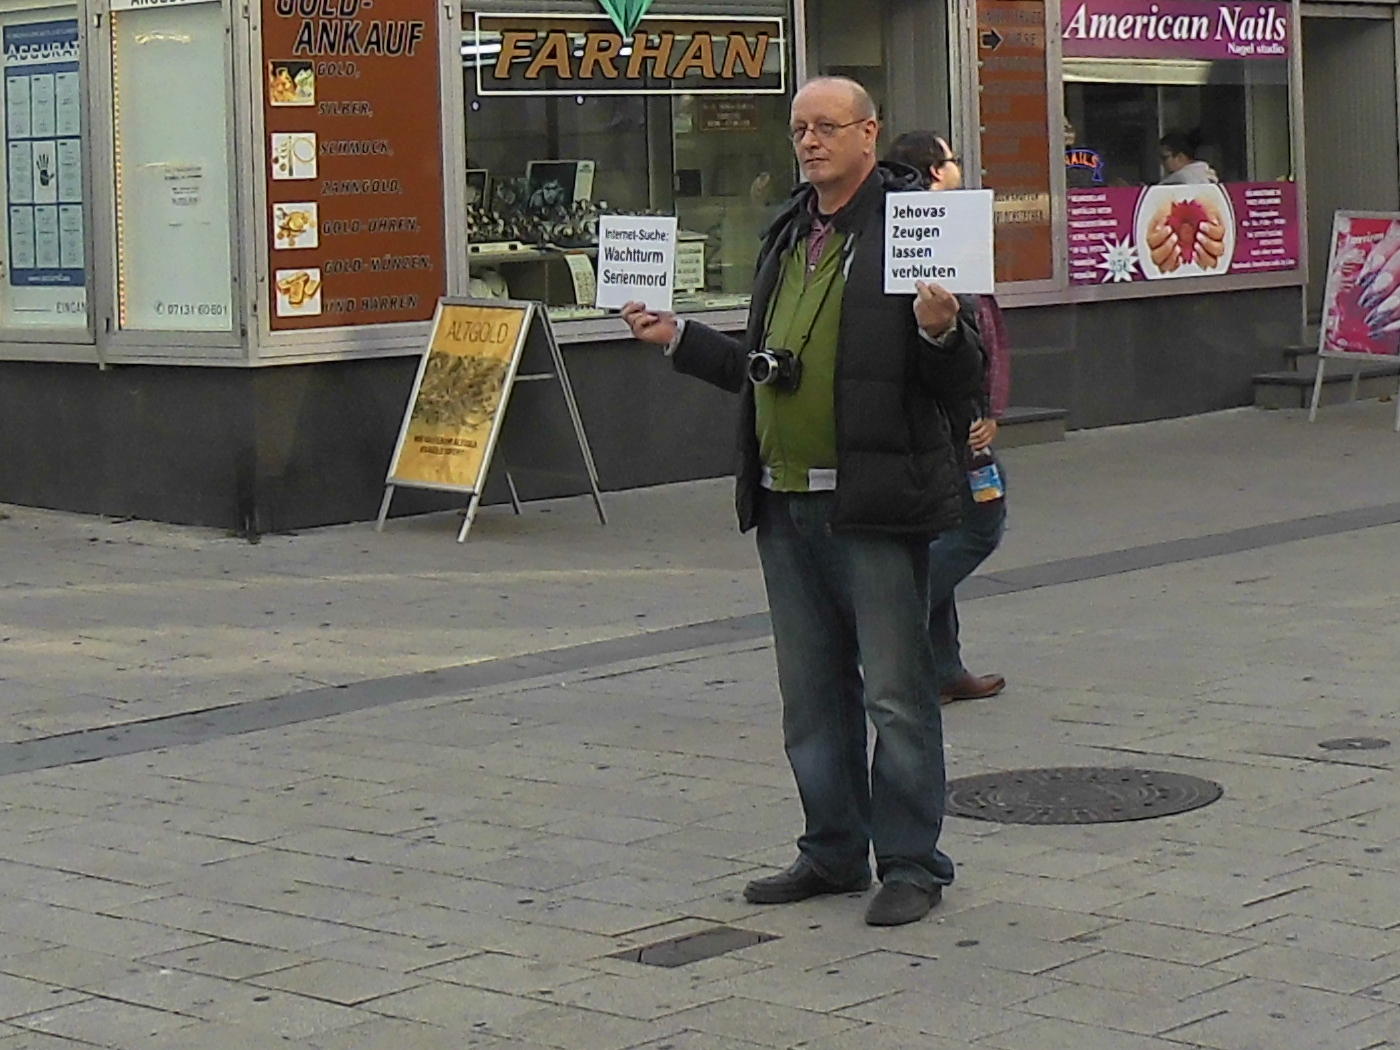 Heilbronn: Heiliges Kanonenrohr! Zeugen Jehovas unter Druck